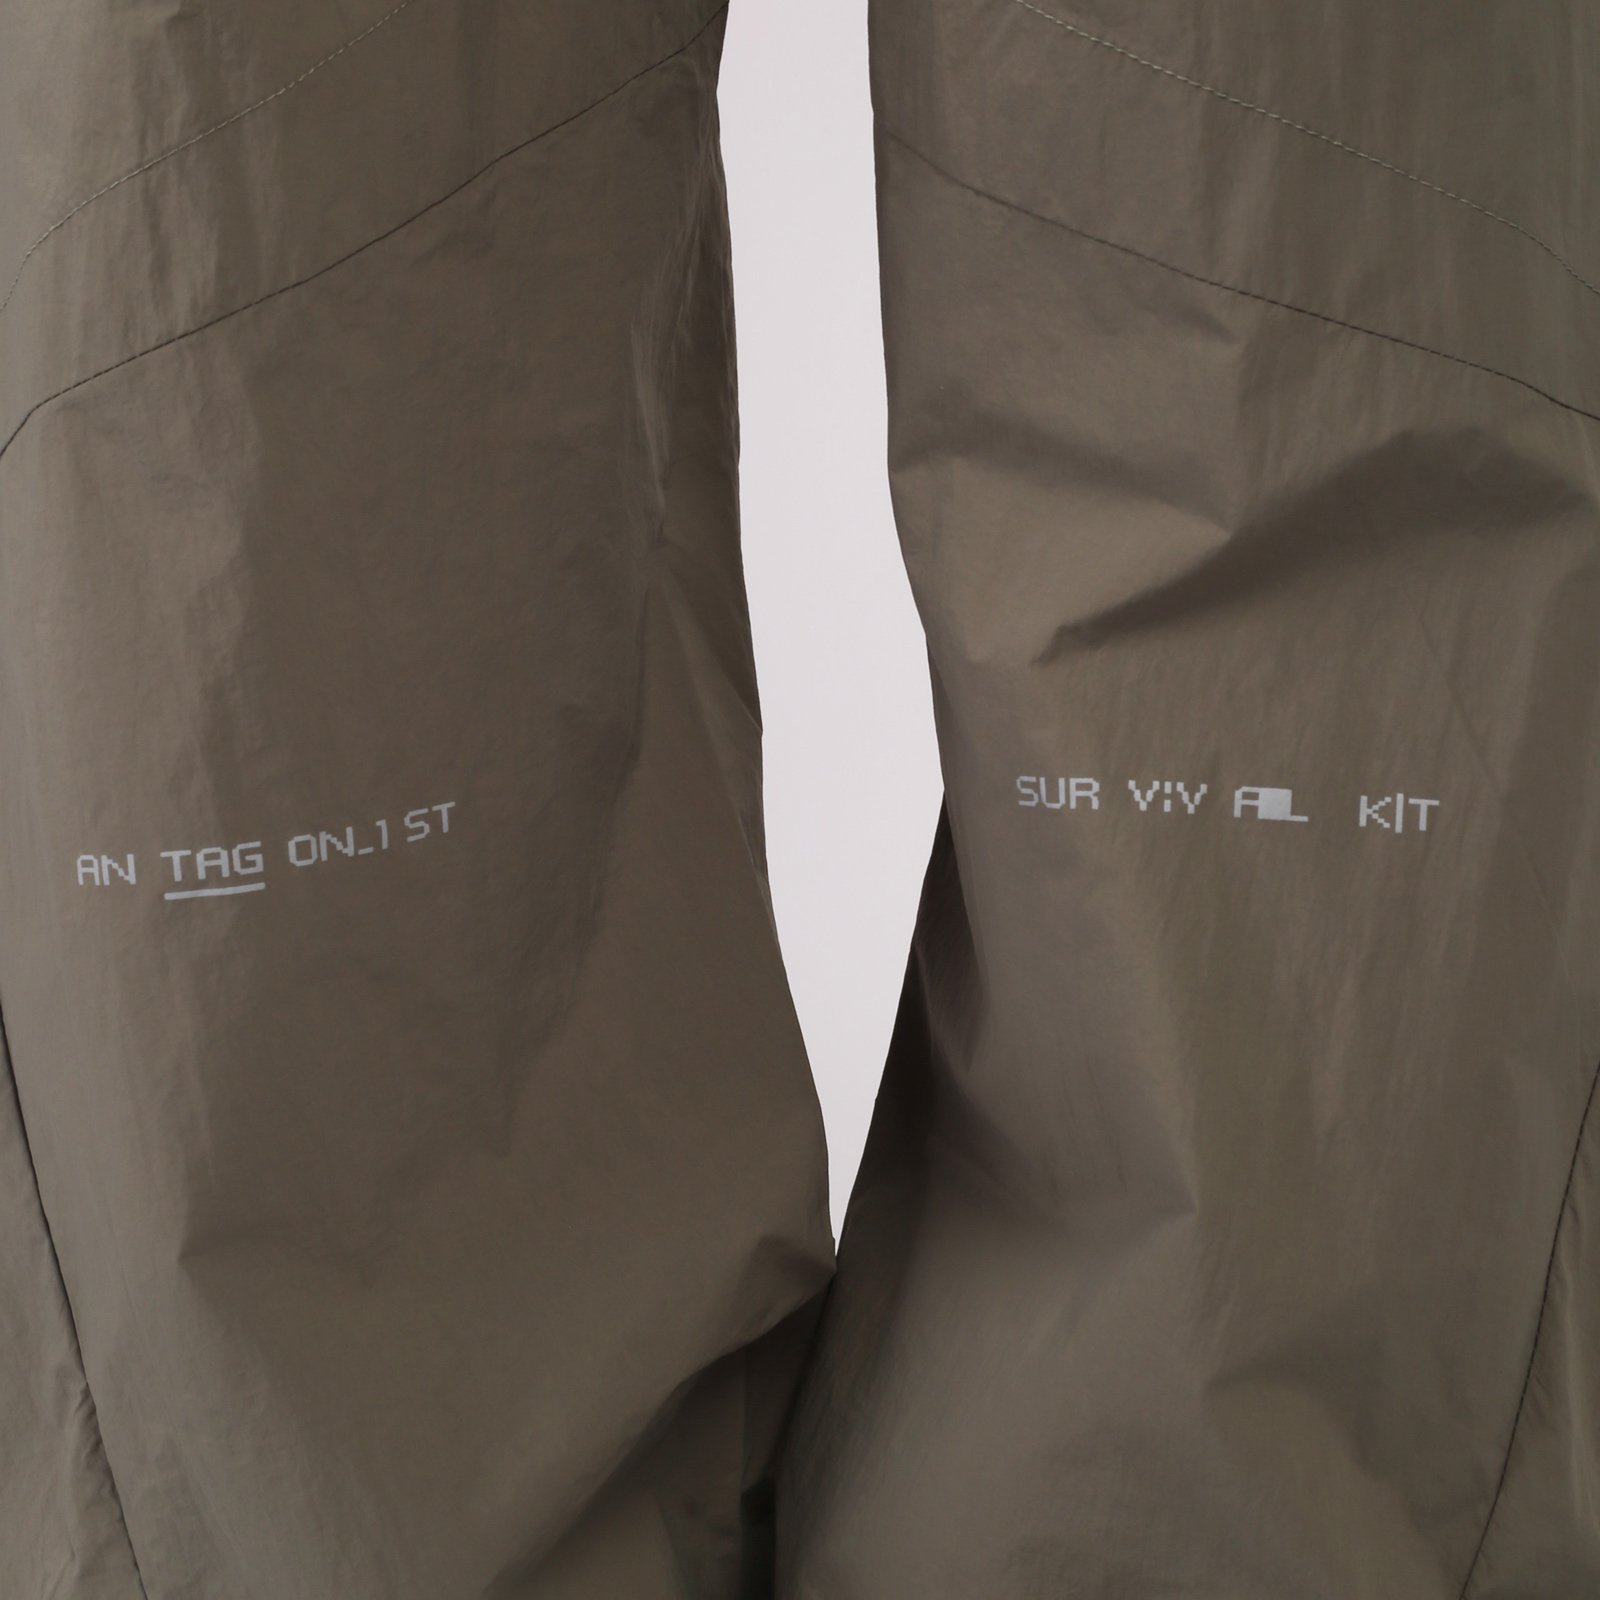 мужские брюки KRAKATAU Rm176-52  (Rm176-52-елово-сер)  - цена, описание, фото 5